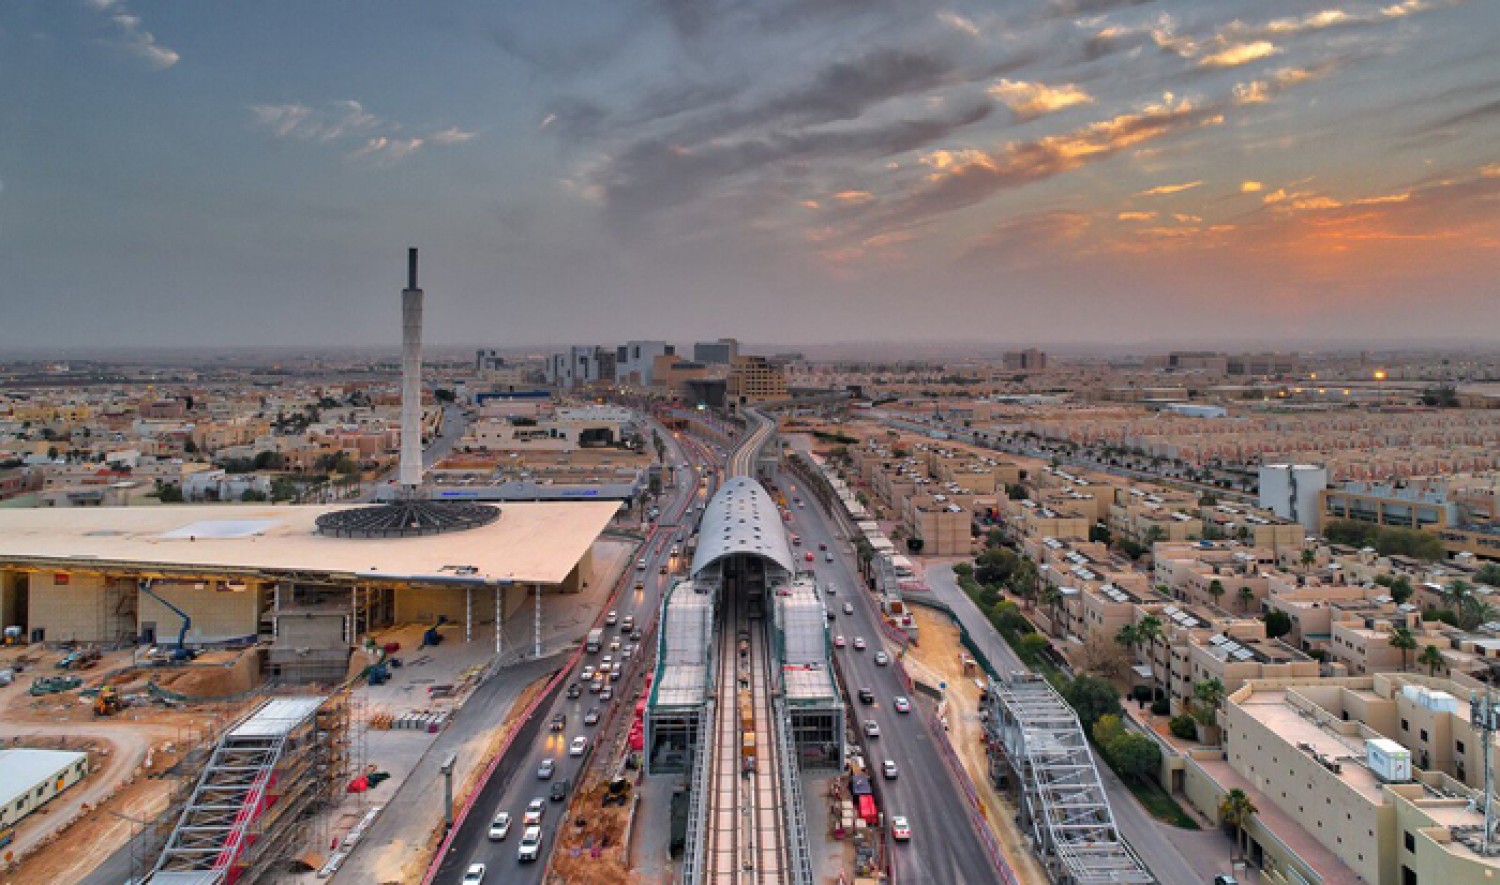 "المرور" يرد على إنتقاد أحد الإعلاميين بالإخفاق بإدارة الحركة المرورية في الرياض 12